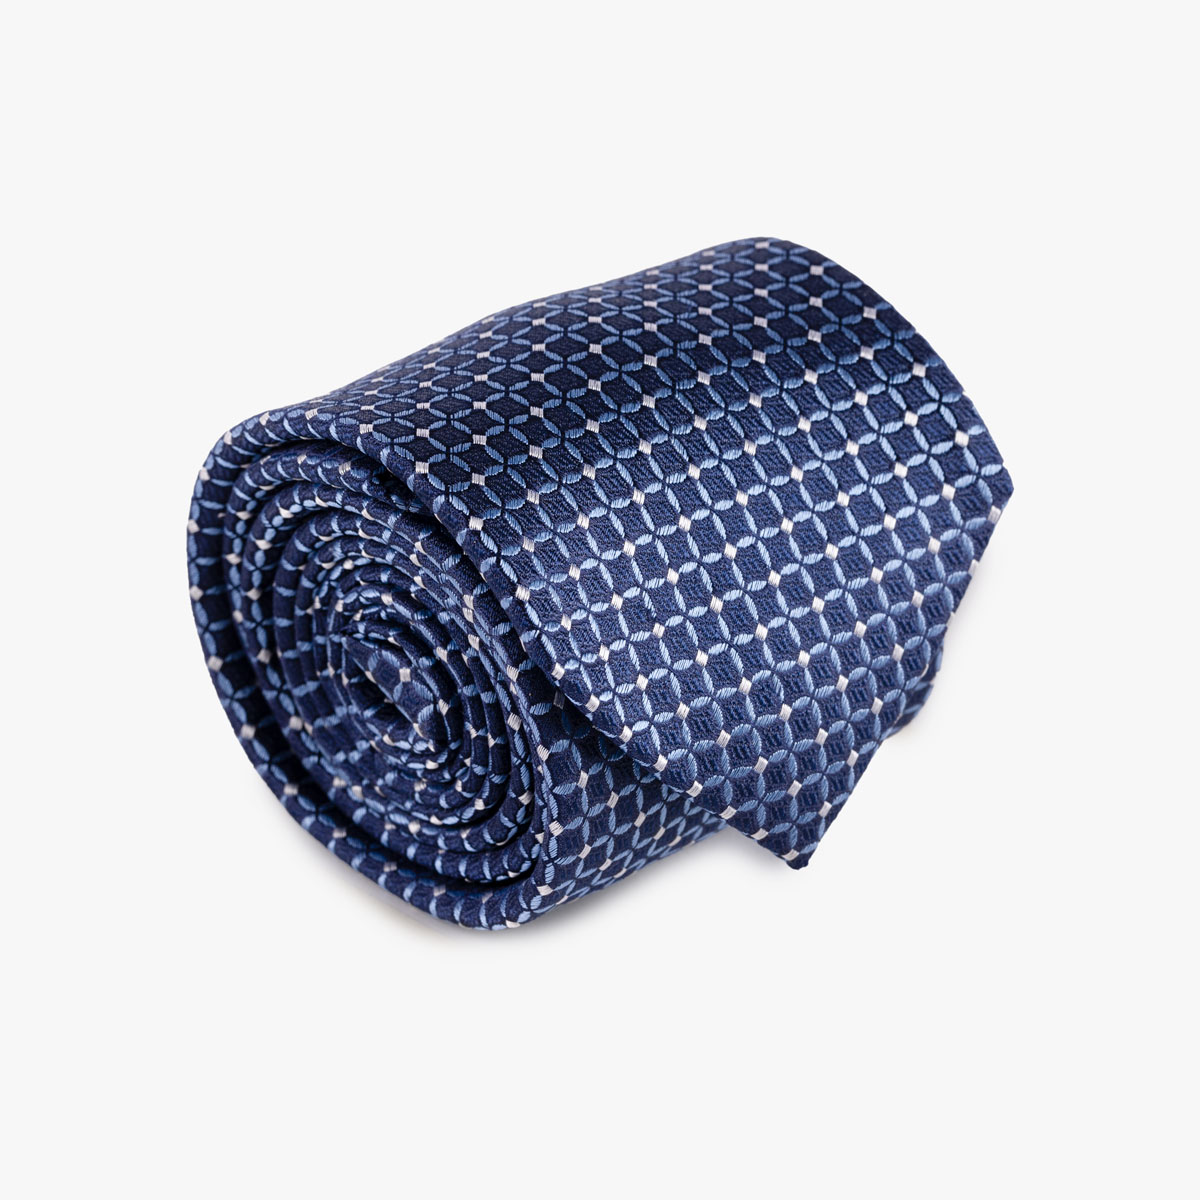 Krawatte aus Seide in dunkelblau mit hellem Muster